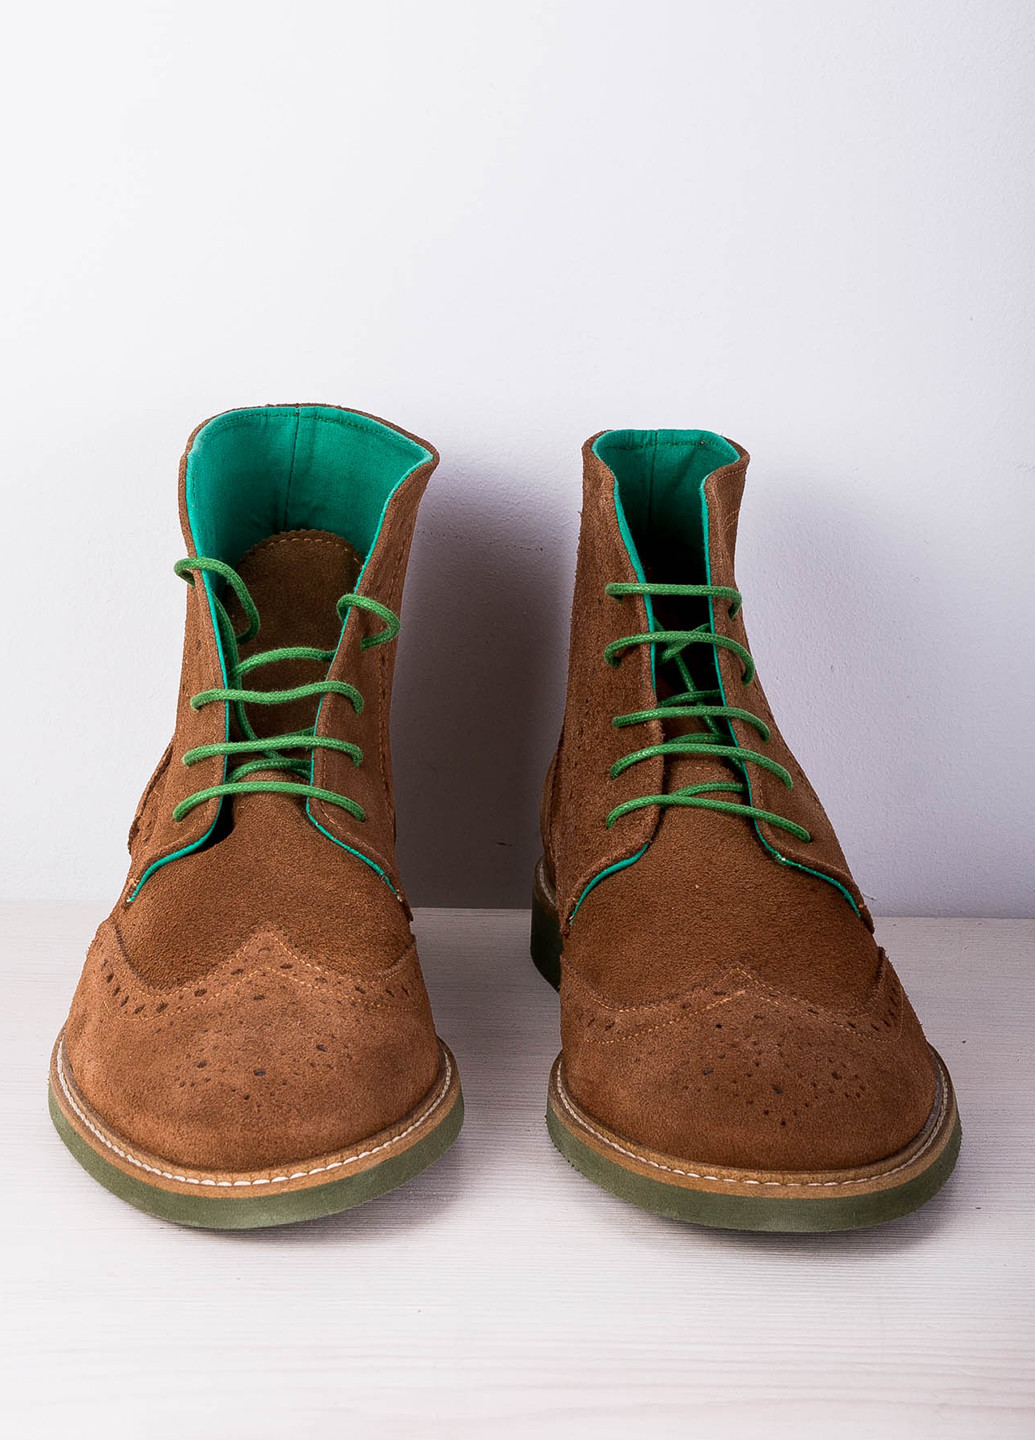 Светло-коричневые осенние ботинки броги El Ganso